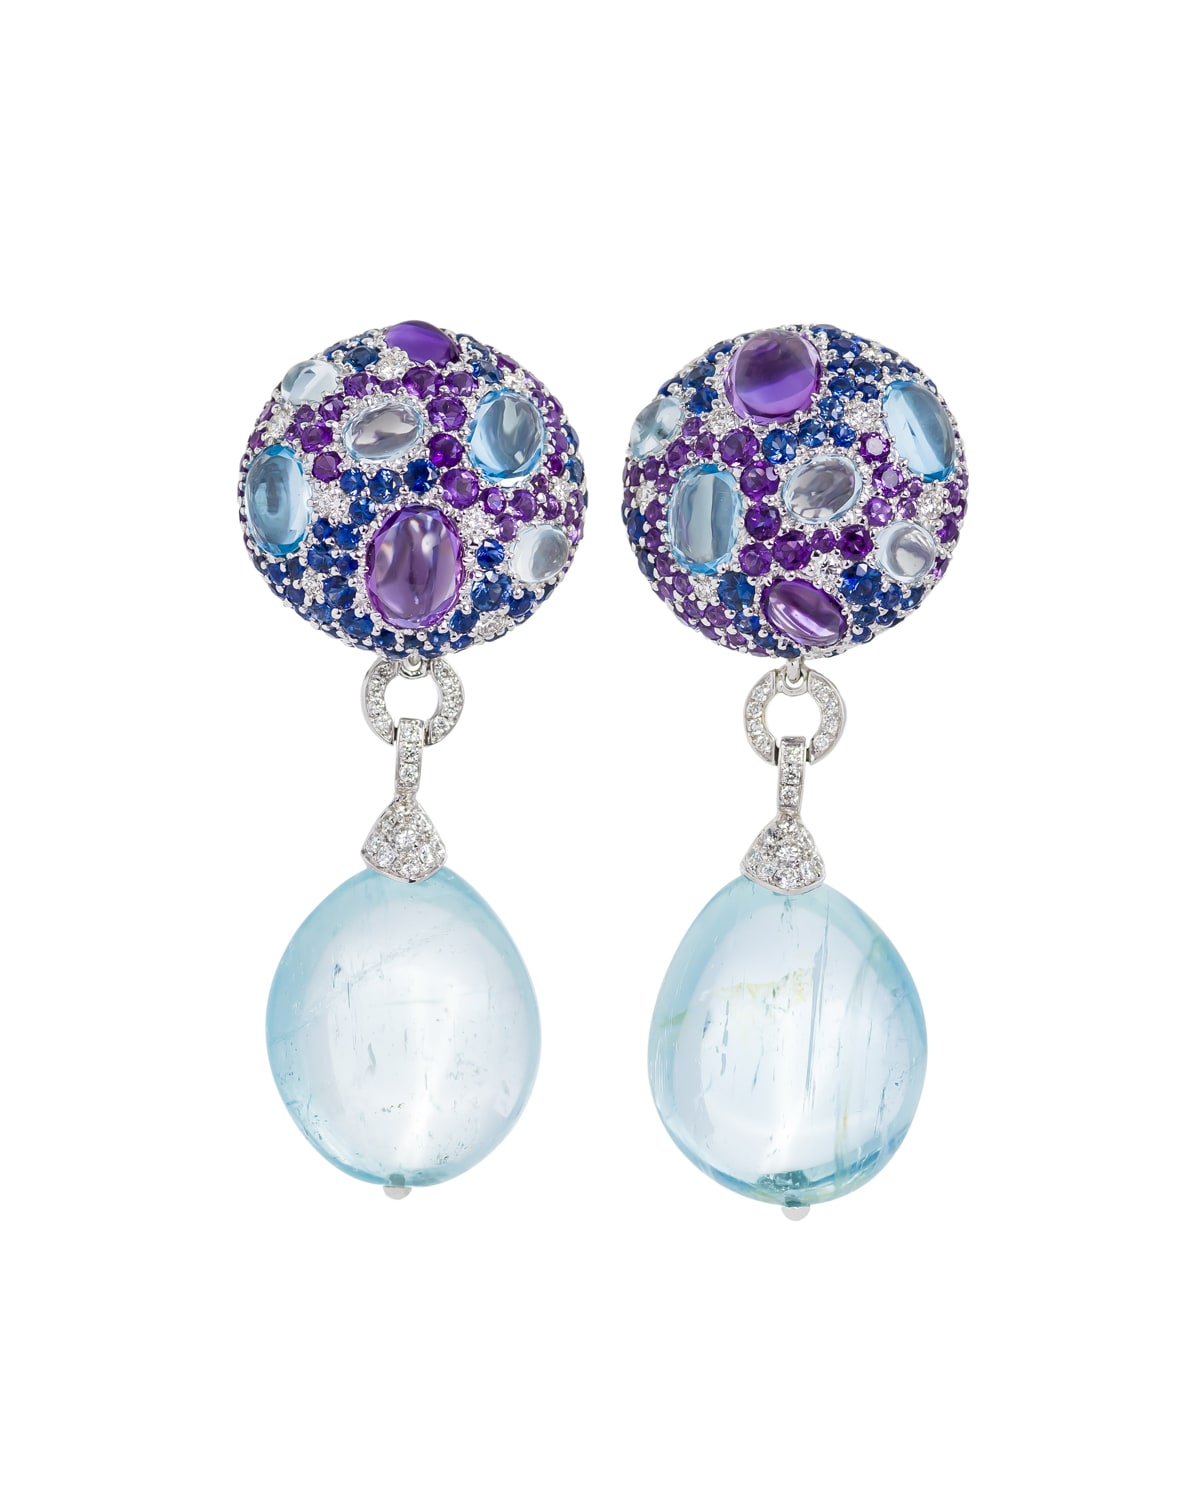 Margot McKinney Jewelry Multi-Stone & Detachable Drop Earrings, Blue